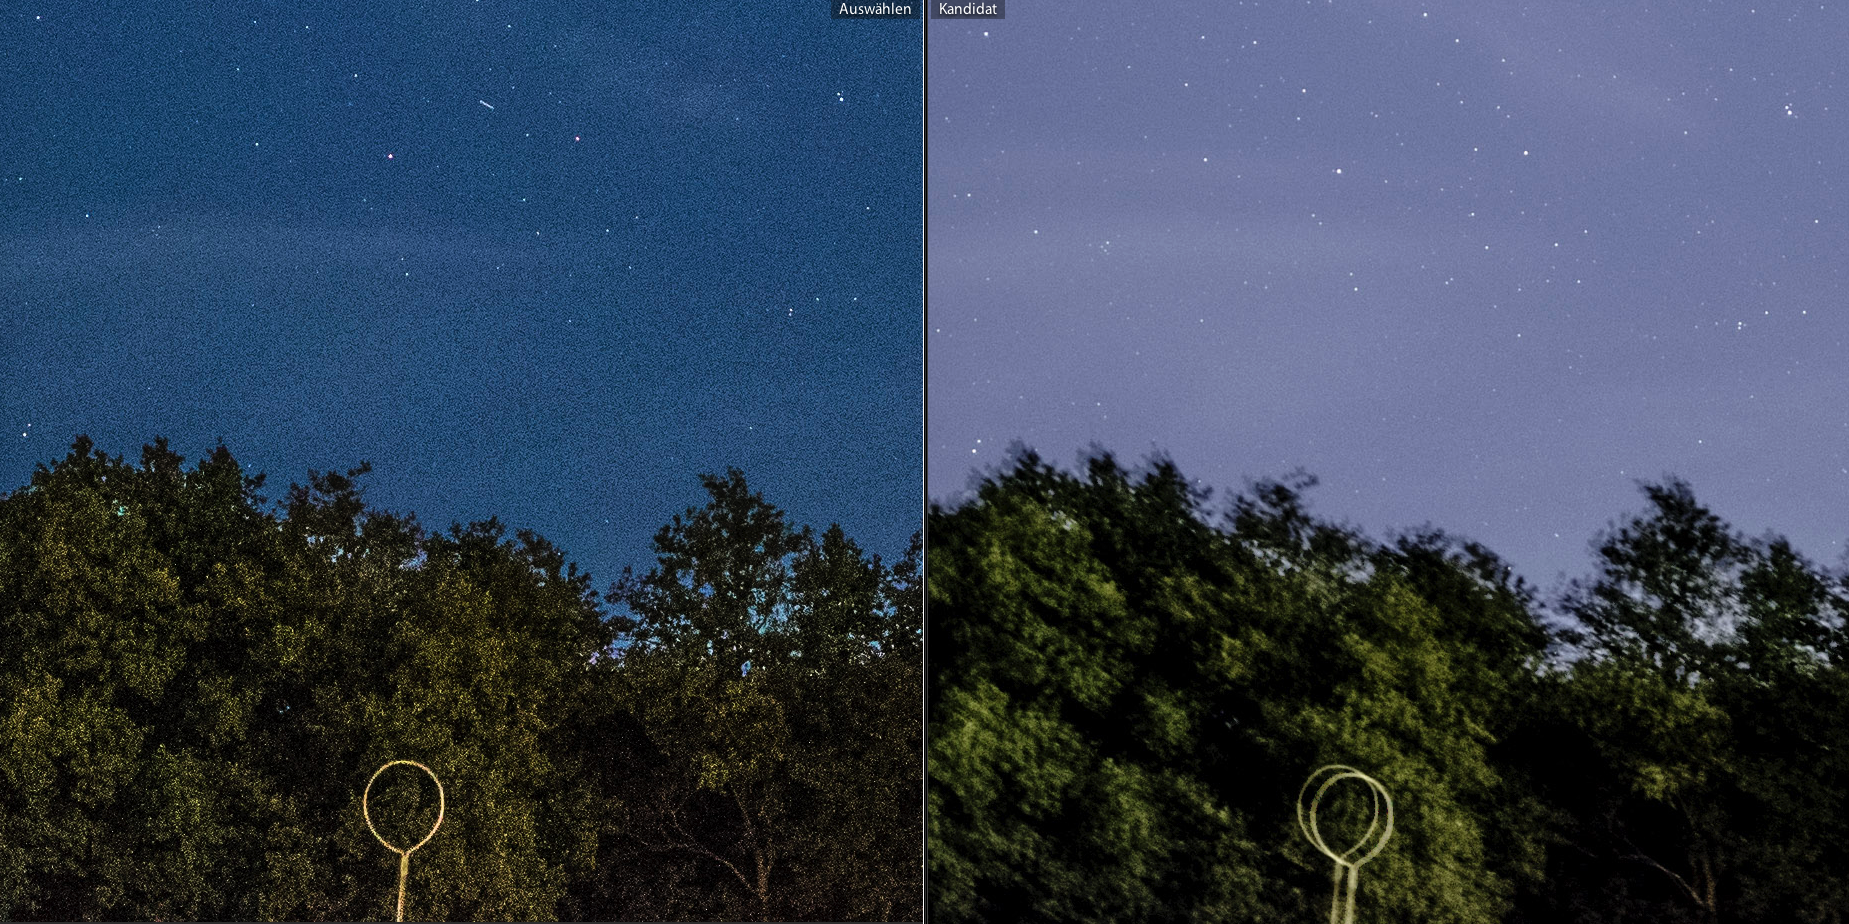 Detail des Nachthimmel-Fotos im Vergleich: Links scharf, aber verrauscht, rechts klare Sterne ohne Rauschen, aber unscharfer, verwackelter Vordergrund